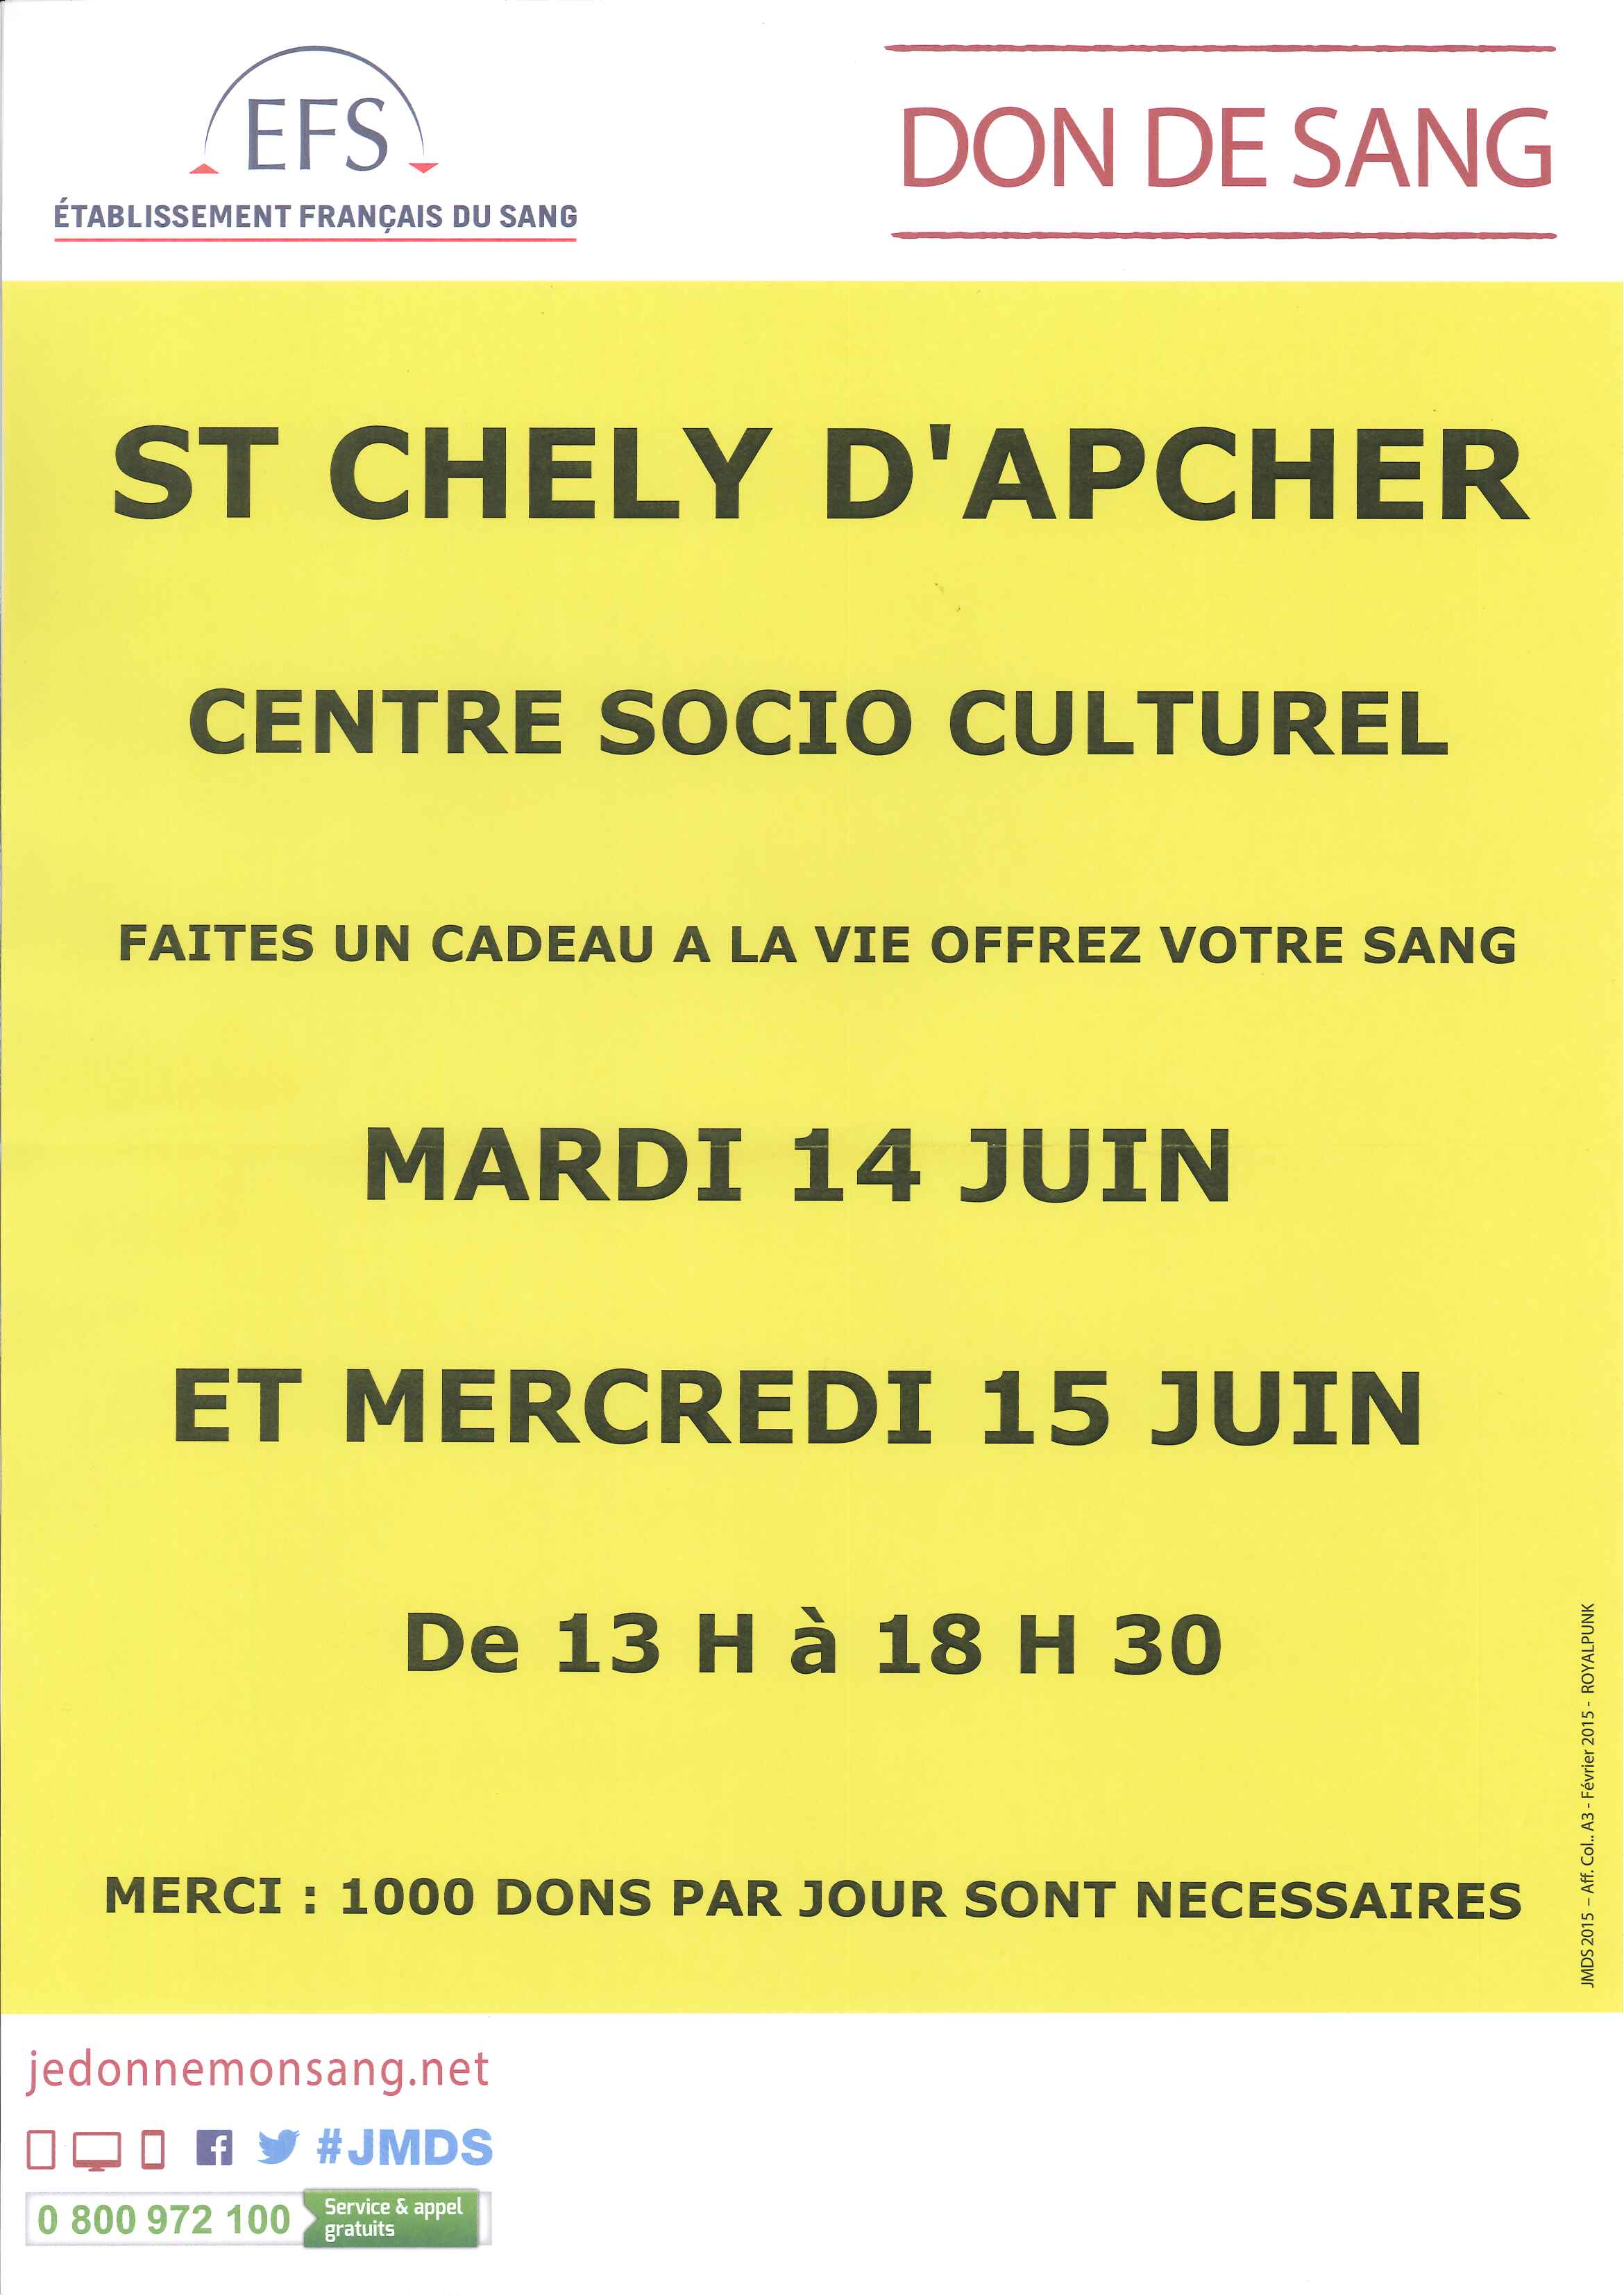 don du sang à Saint Chély d'Apcher les 14 et 15 juin 2016